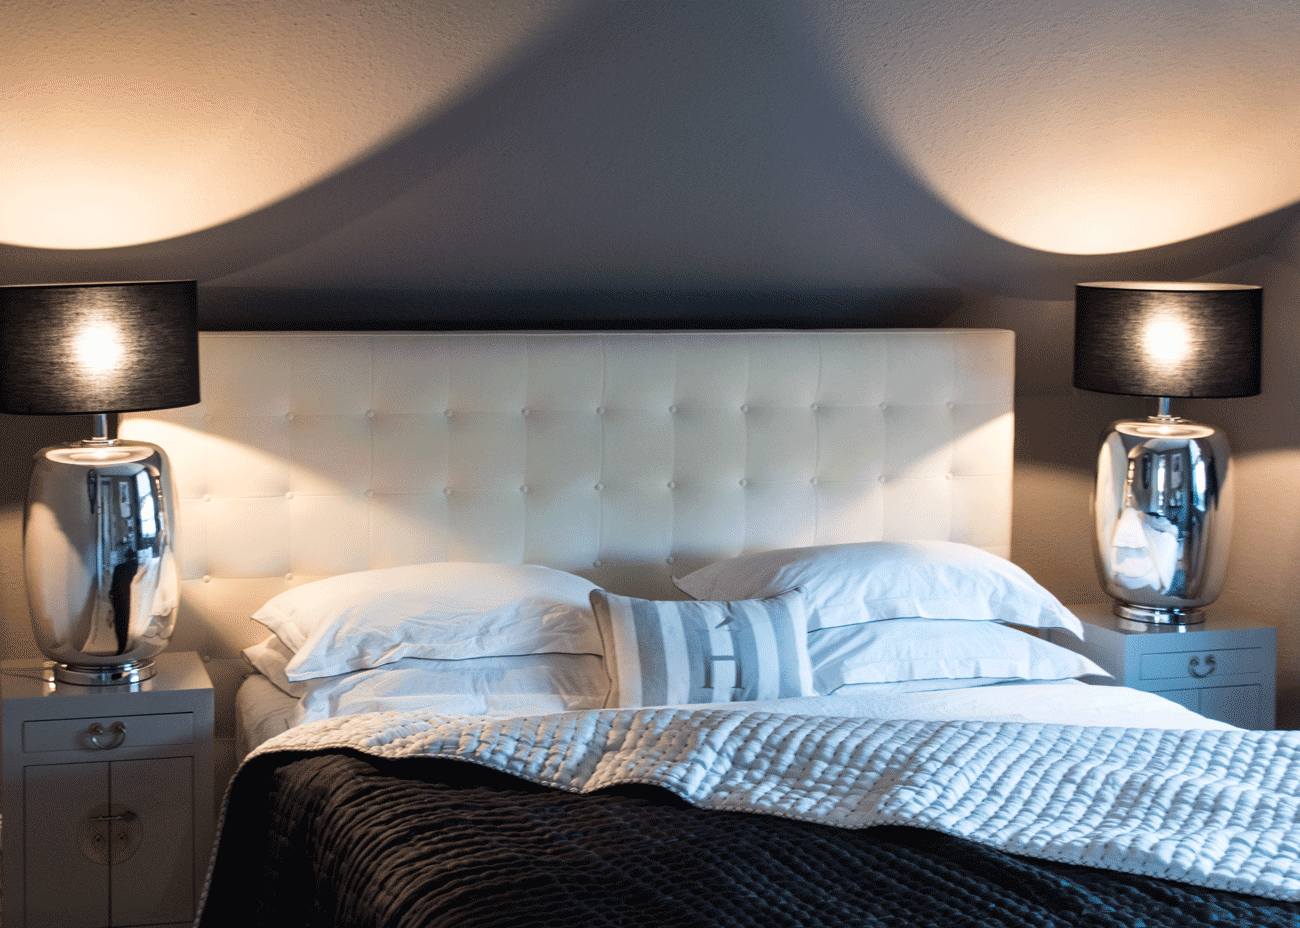 Wohnung renovieren schlafzimmer bett weiss dunkle wandfarbe leuchten schwarz kissen weiss